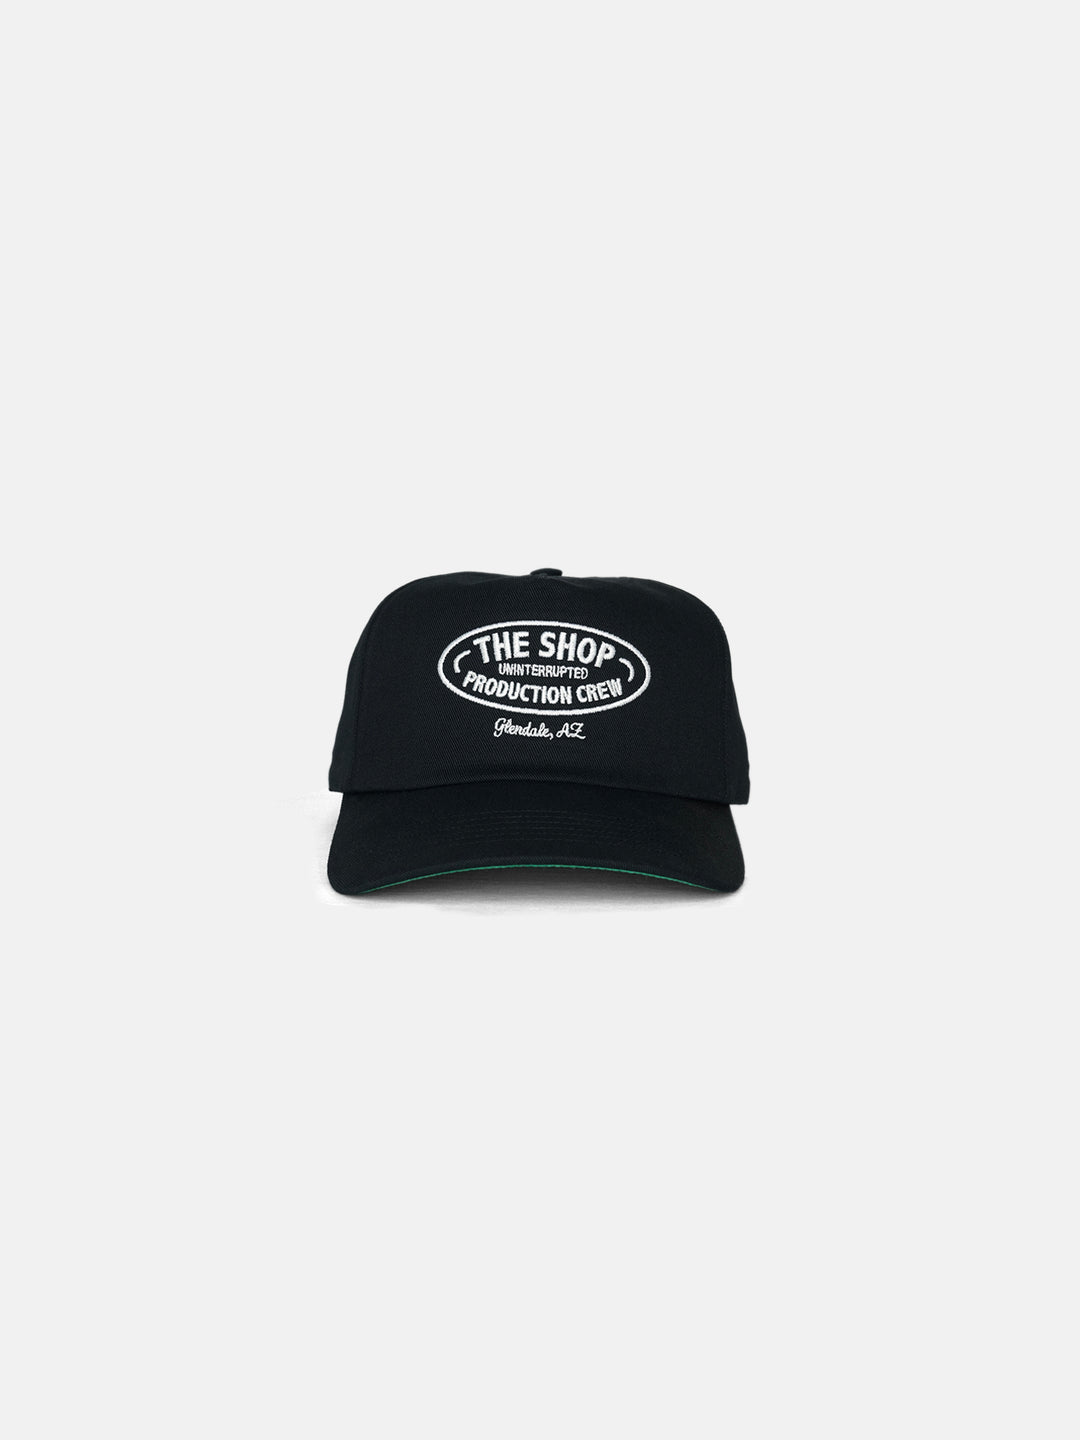 The Shop Crew Hat Black - Front